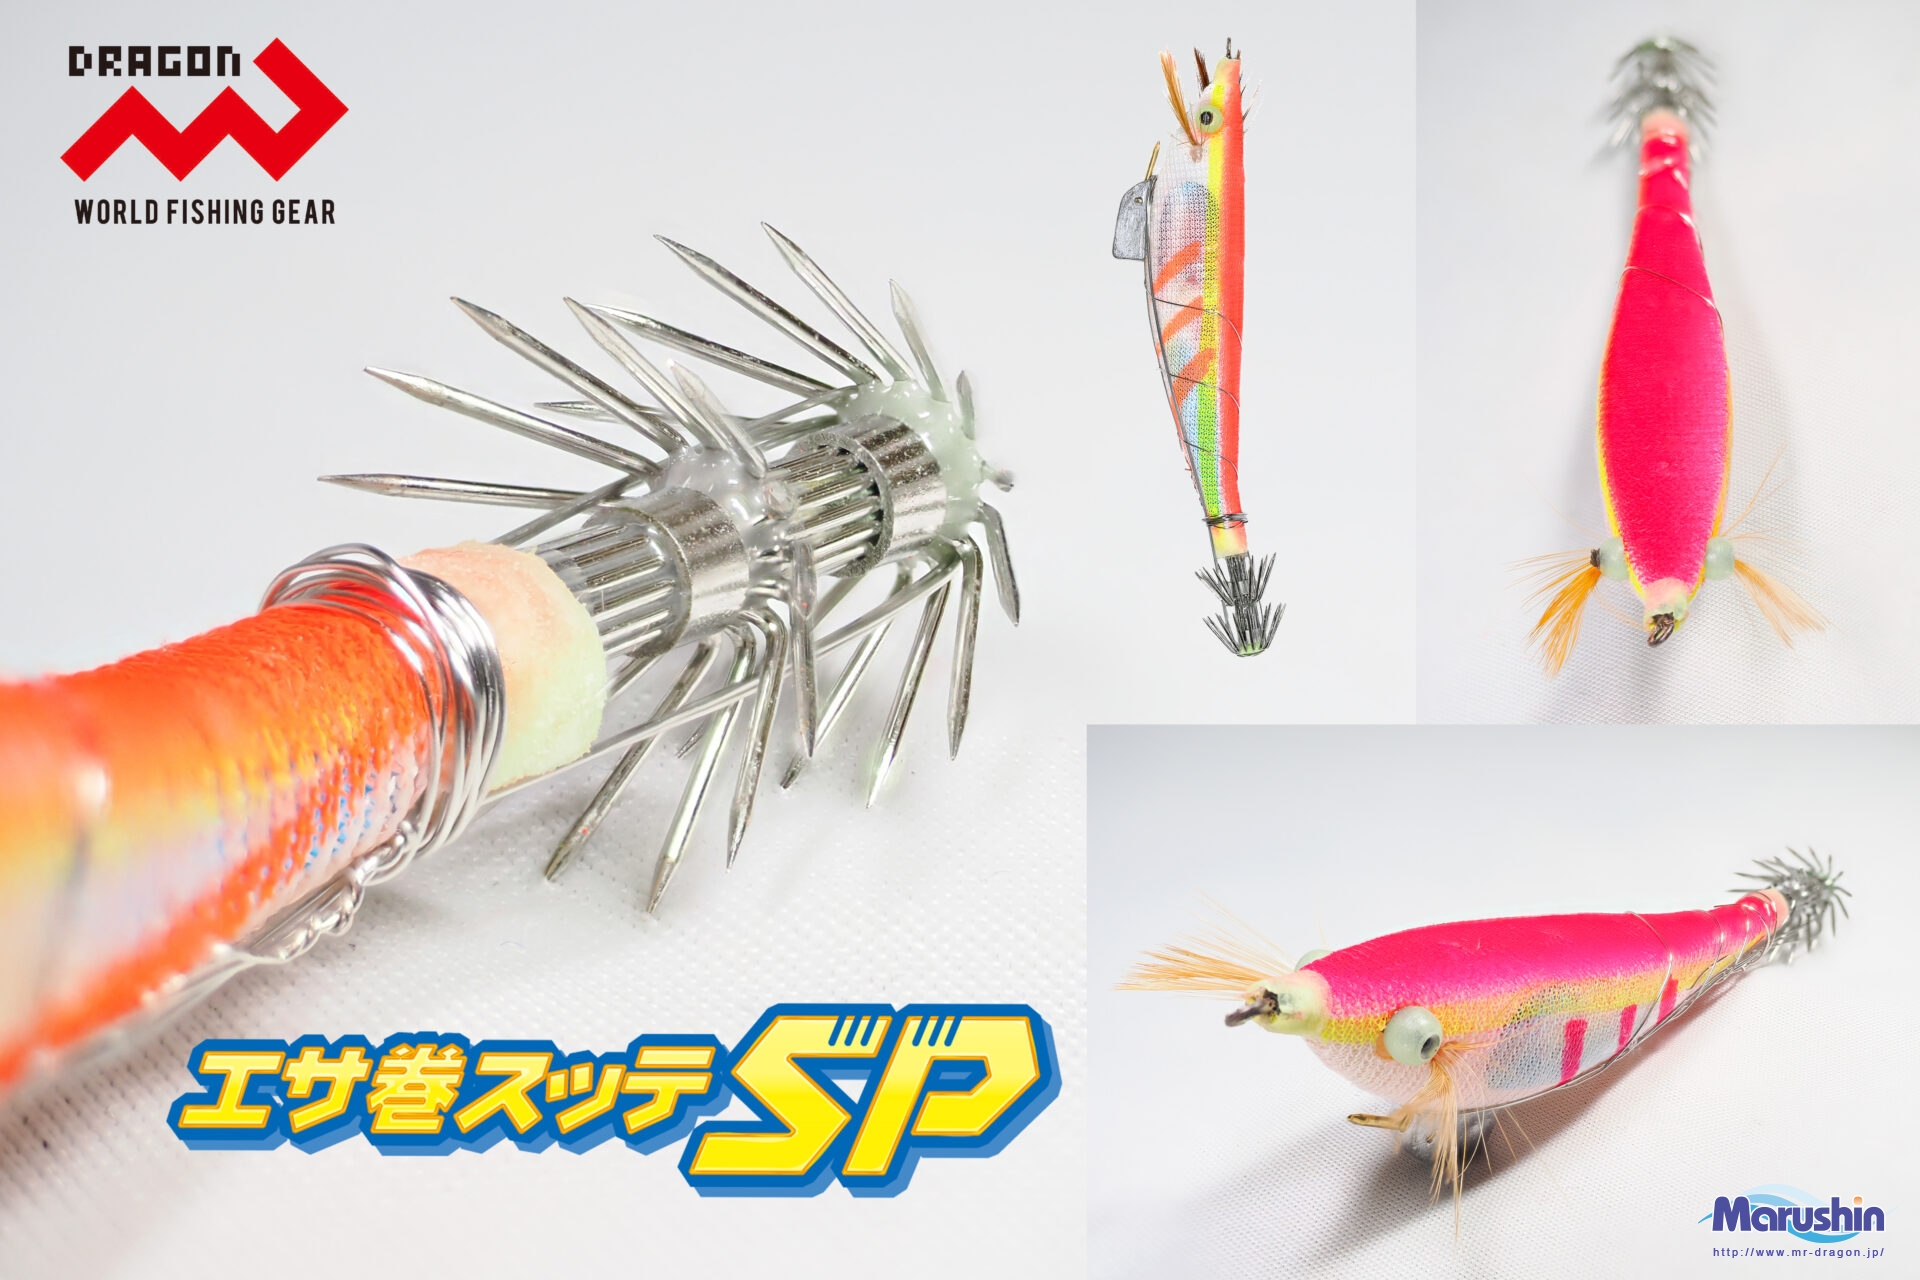 エサ巻スッテSP/エサマキスッテ エスピー 全5色 | 釣具の卸売り | 世界の釣具マルシン漁具